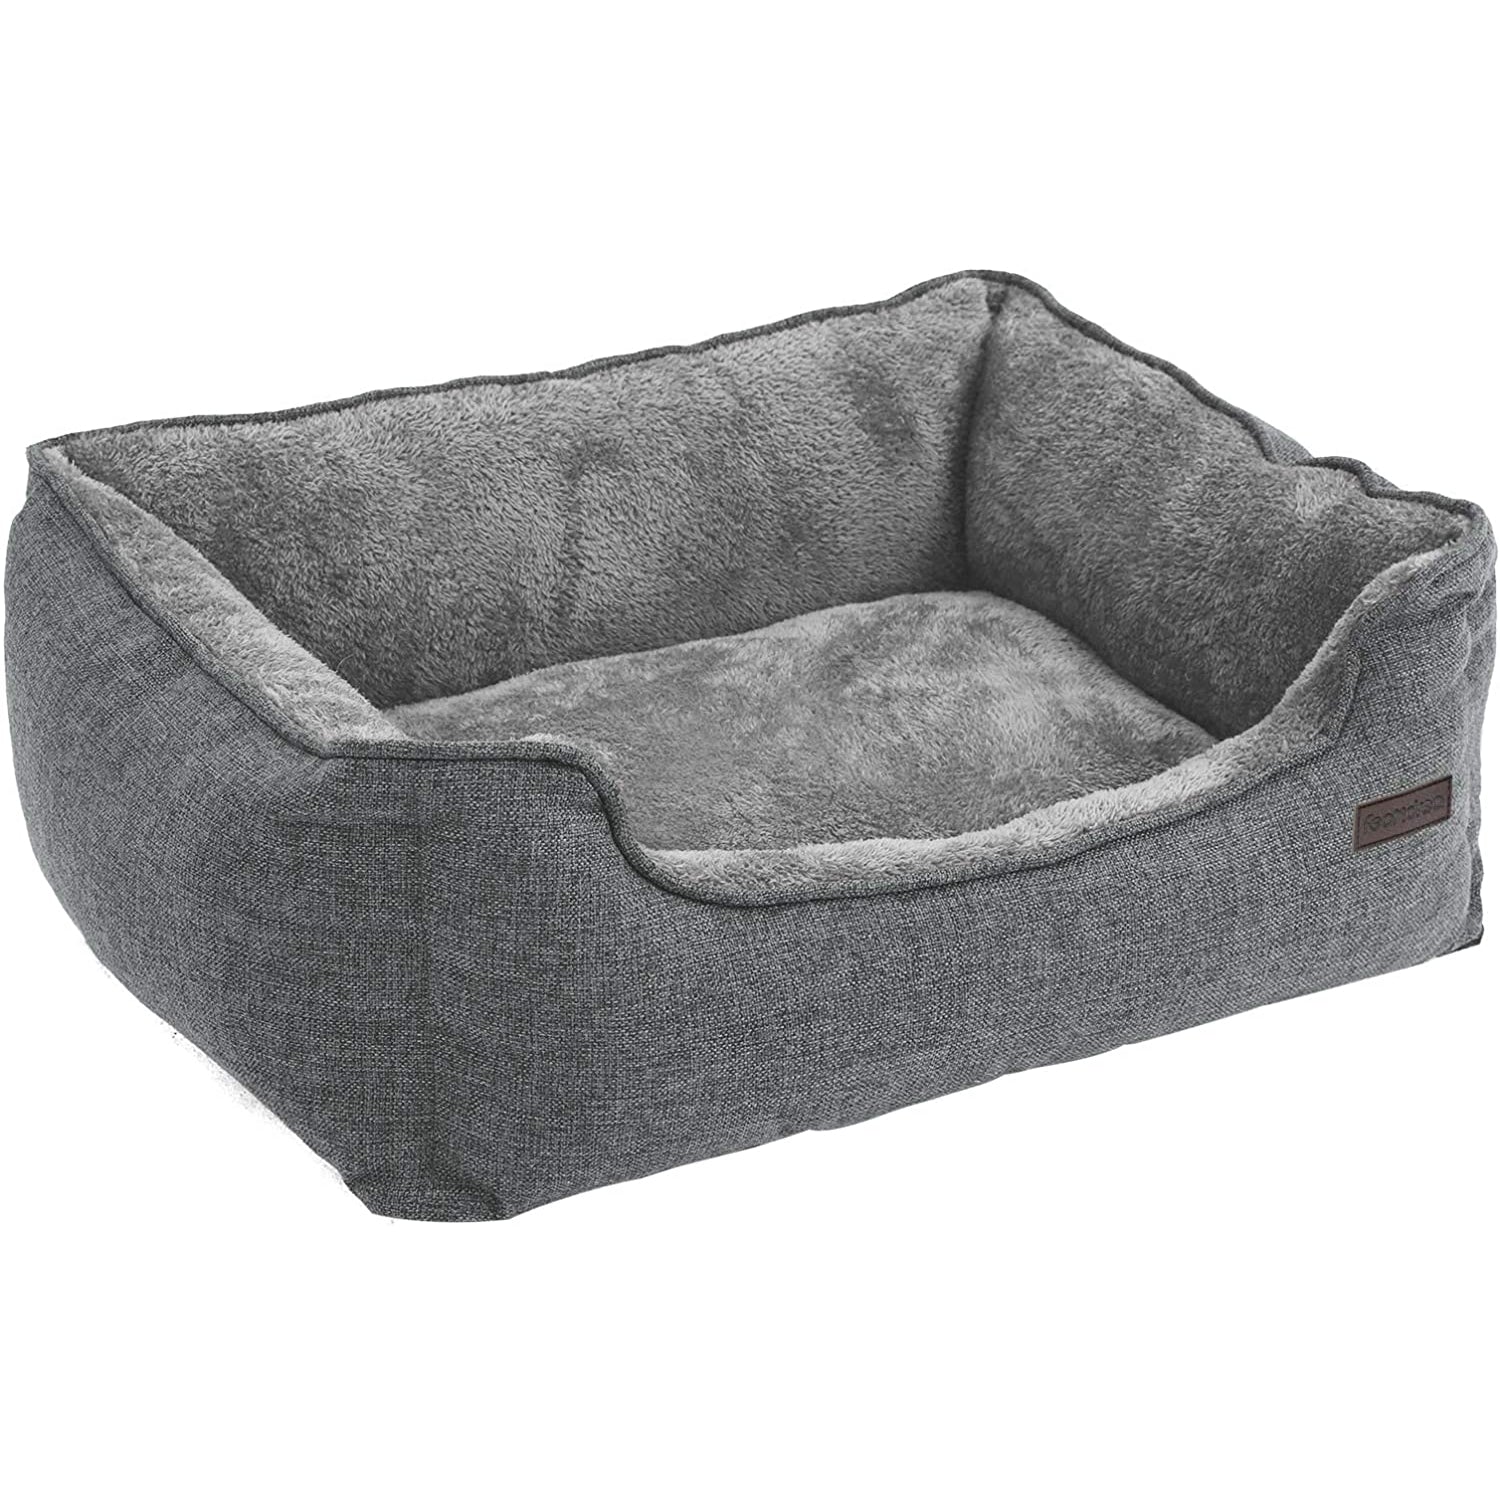 Nancy's Deluxe Dog Bed Lavable - Lit pour chien - Housse amovible - Lits pour chiens - 70 x 55 x 21 cm